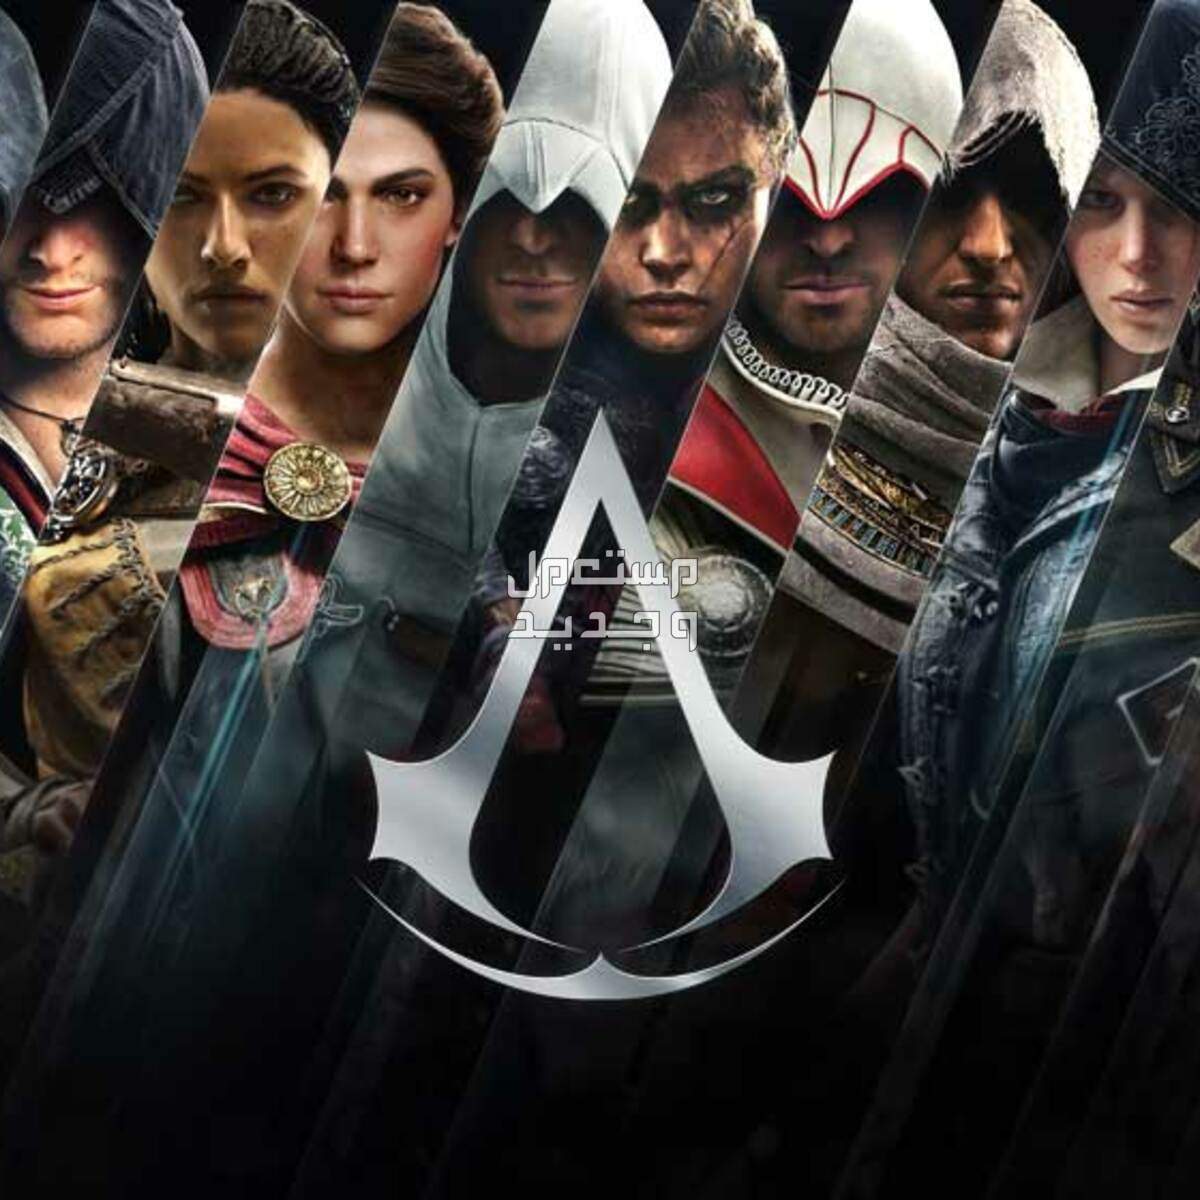 معك لابتوب ألعاب؟ تسلى و تعلم التاريخ مع Assassin's Creed سلسلة ألعاب أساسنز كريد